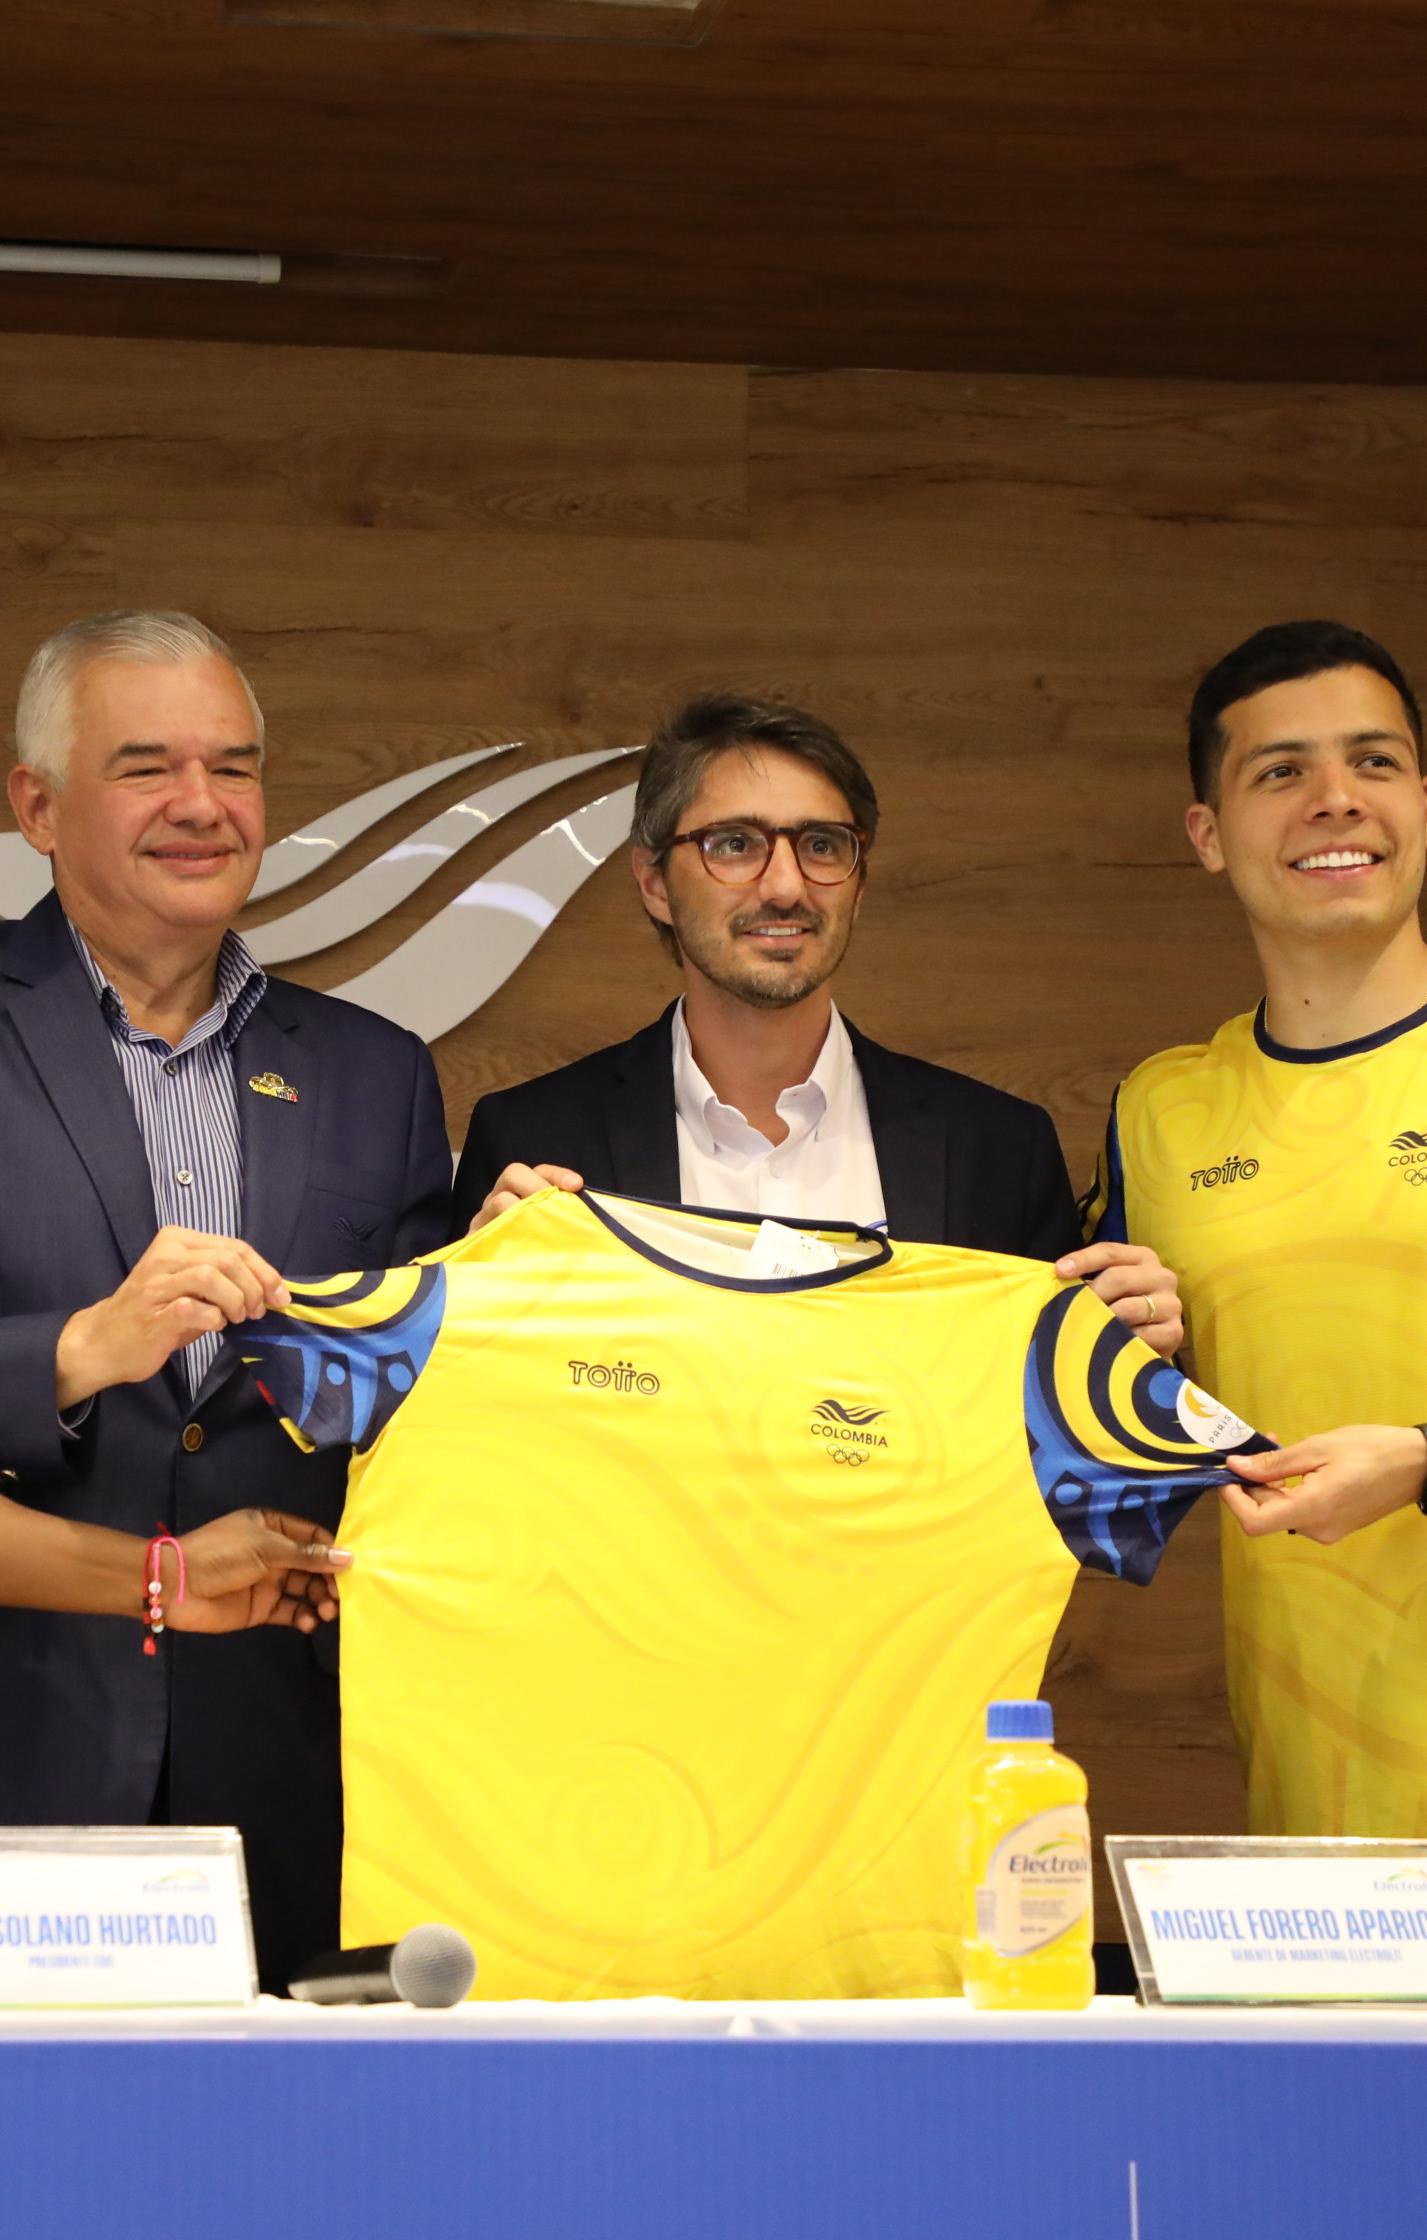 Ciro Solano, presidente del COC, con los deportistas Flor Denis Ruiz y Diego Arboleda.